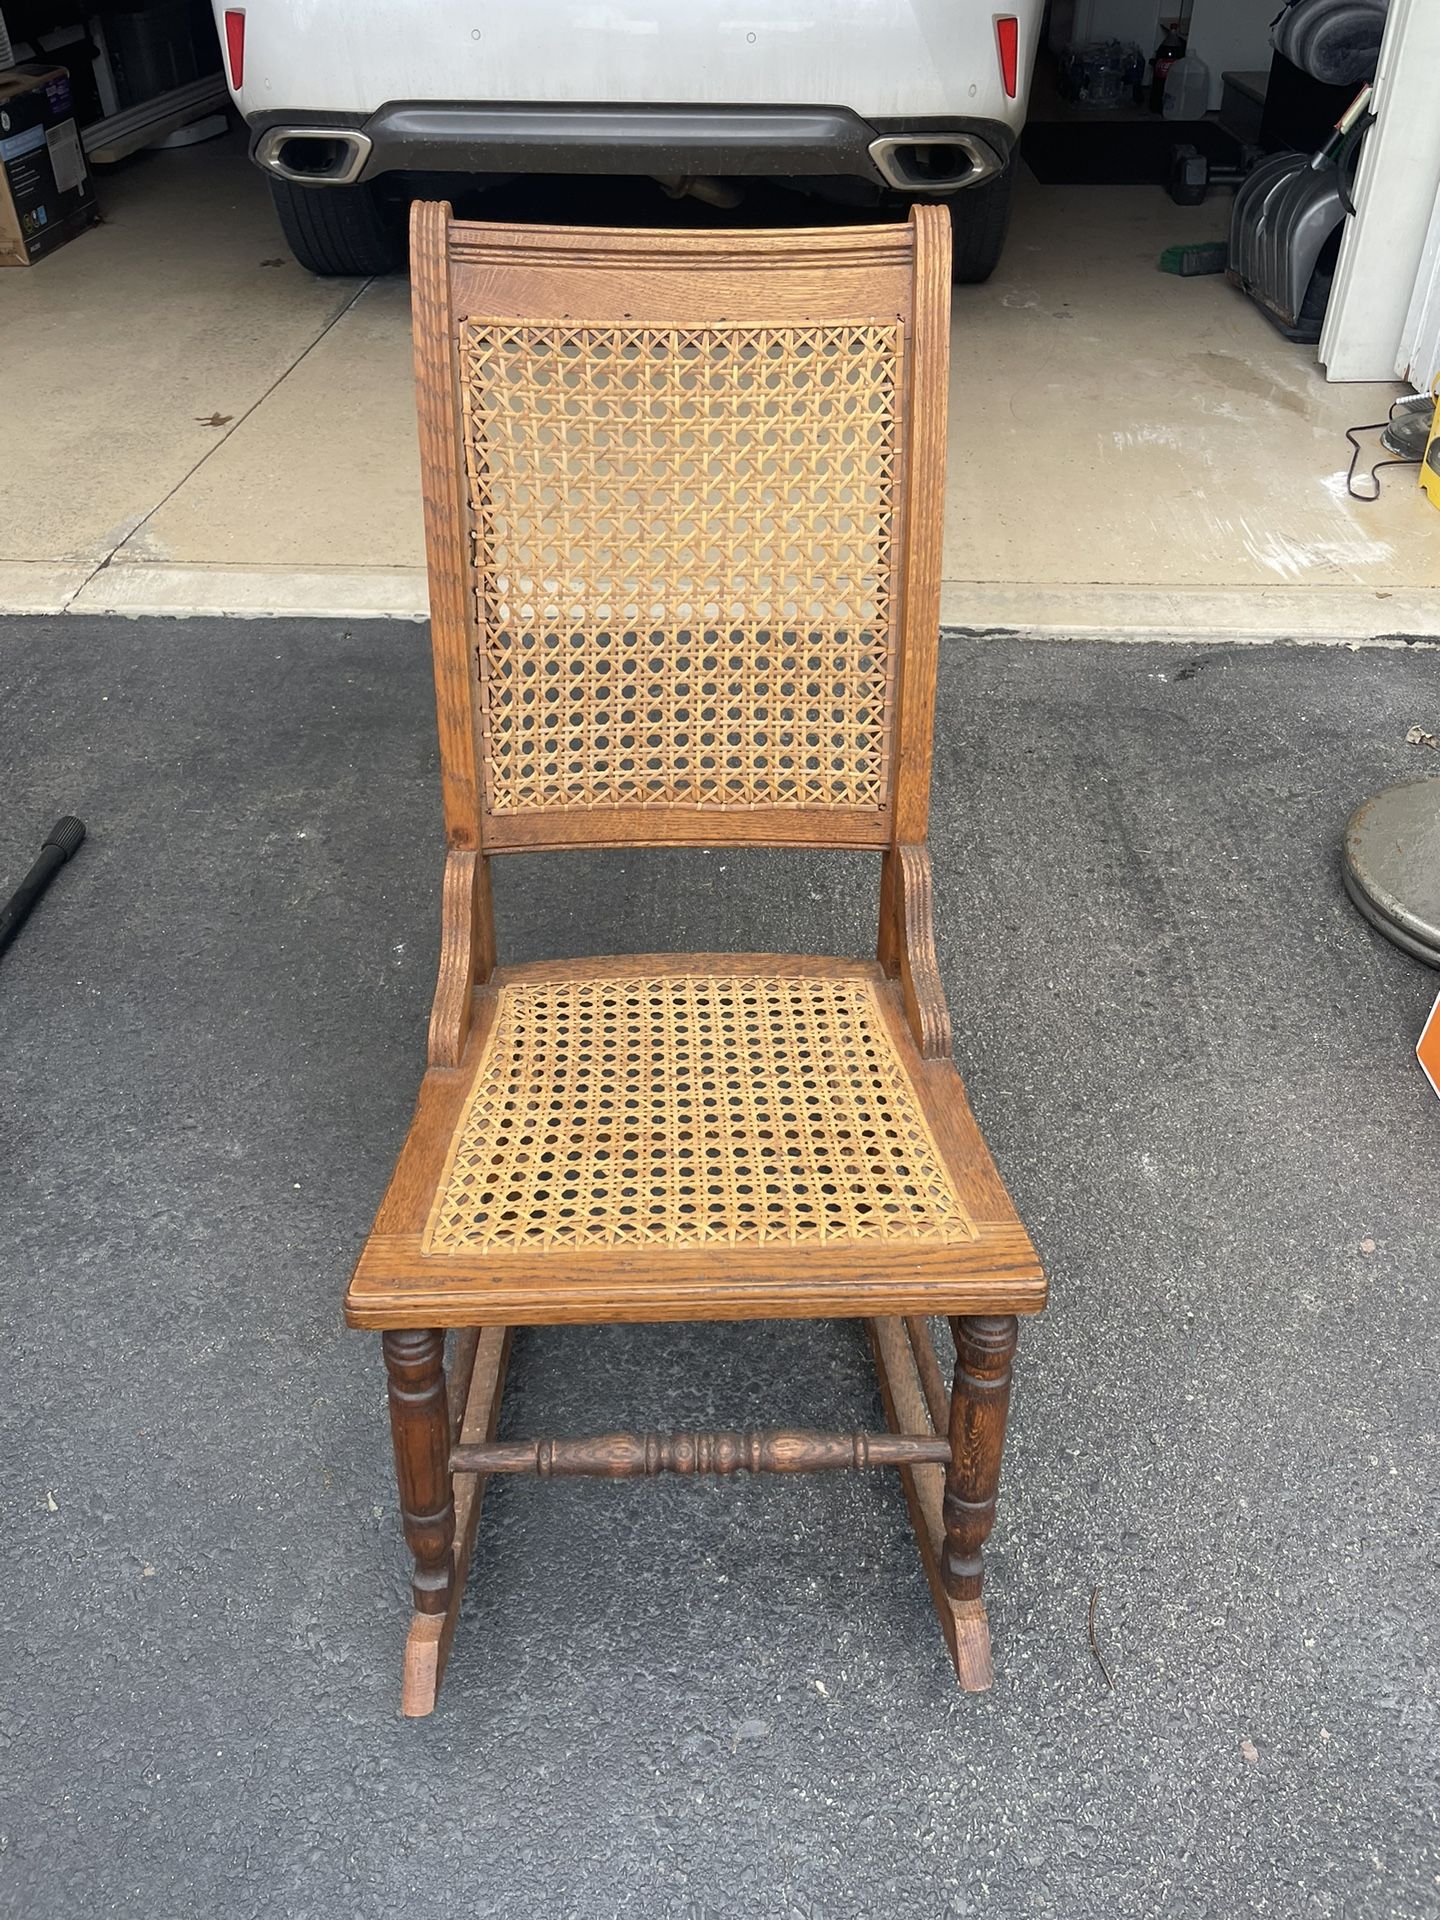 Child’s Vintage Rocking Chair 